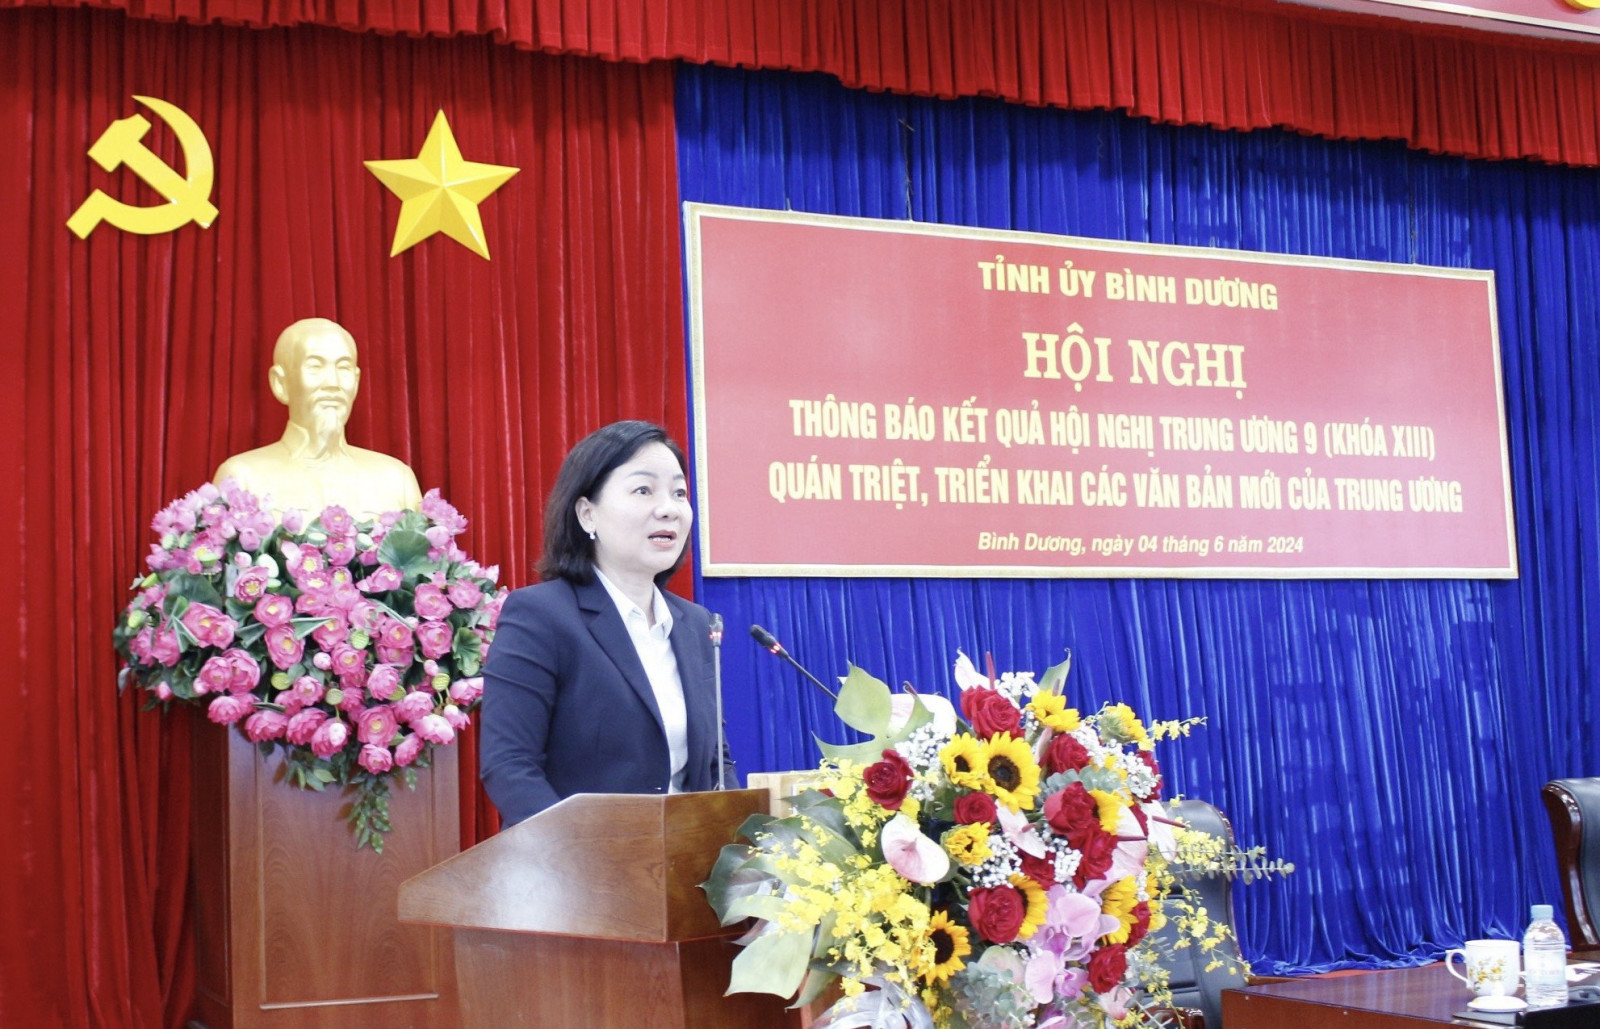 Đồng chí Trương Thị Bích Hạnh báo cáo kết quả Hội nghị Trung ương 9, khóa XIII và quán triệt, triển khai các văn bản mới của Trung ương.